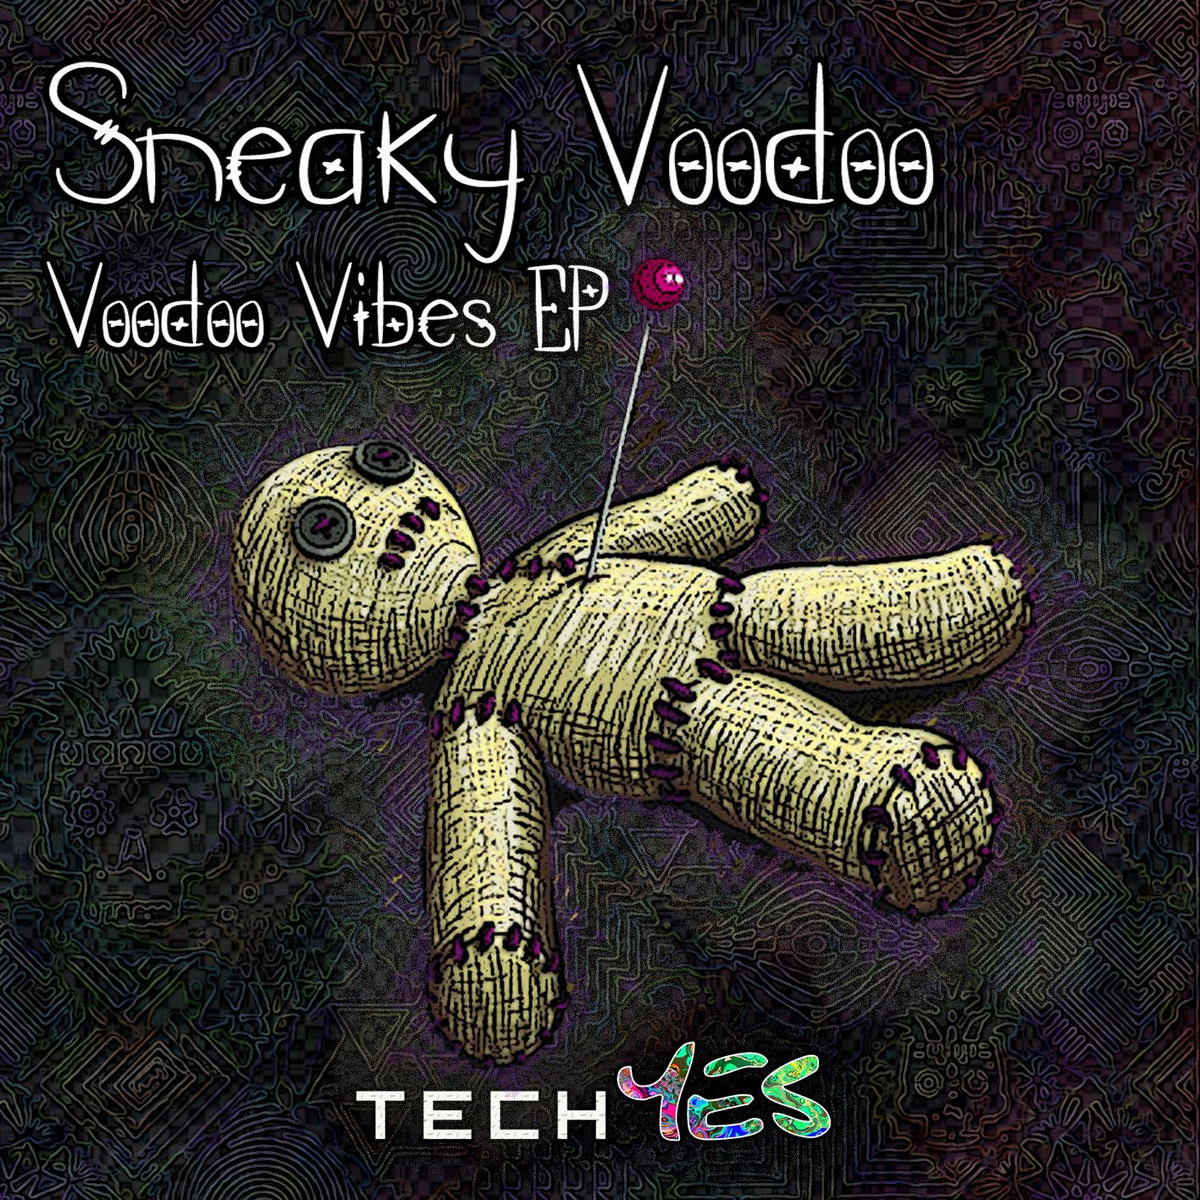 voodoo-vibes-ep-sneaky-voodoo-techyes